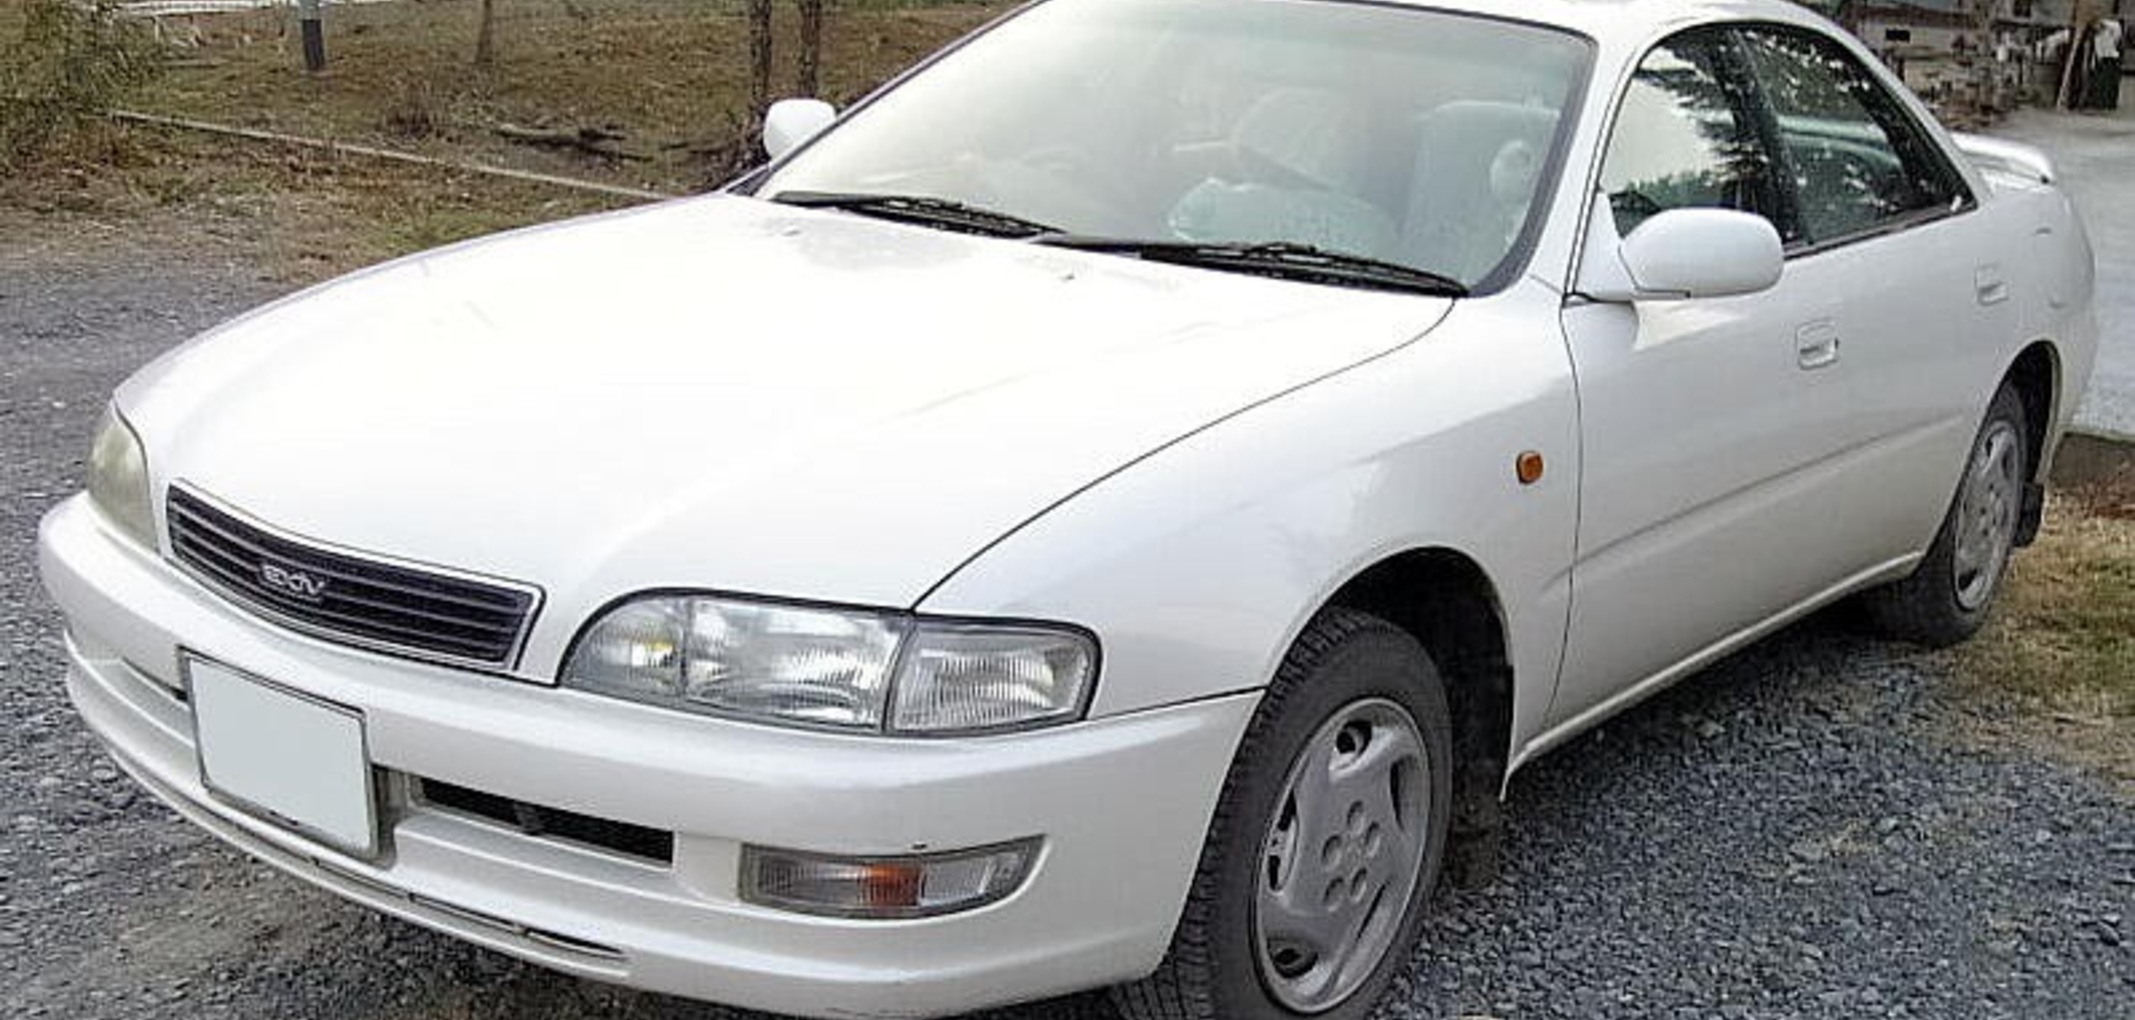 Toyota Corona EXiV 1.8i (125 Hp) 1993, 1994, 1995, 1996, 1997, 1998 